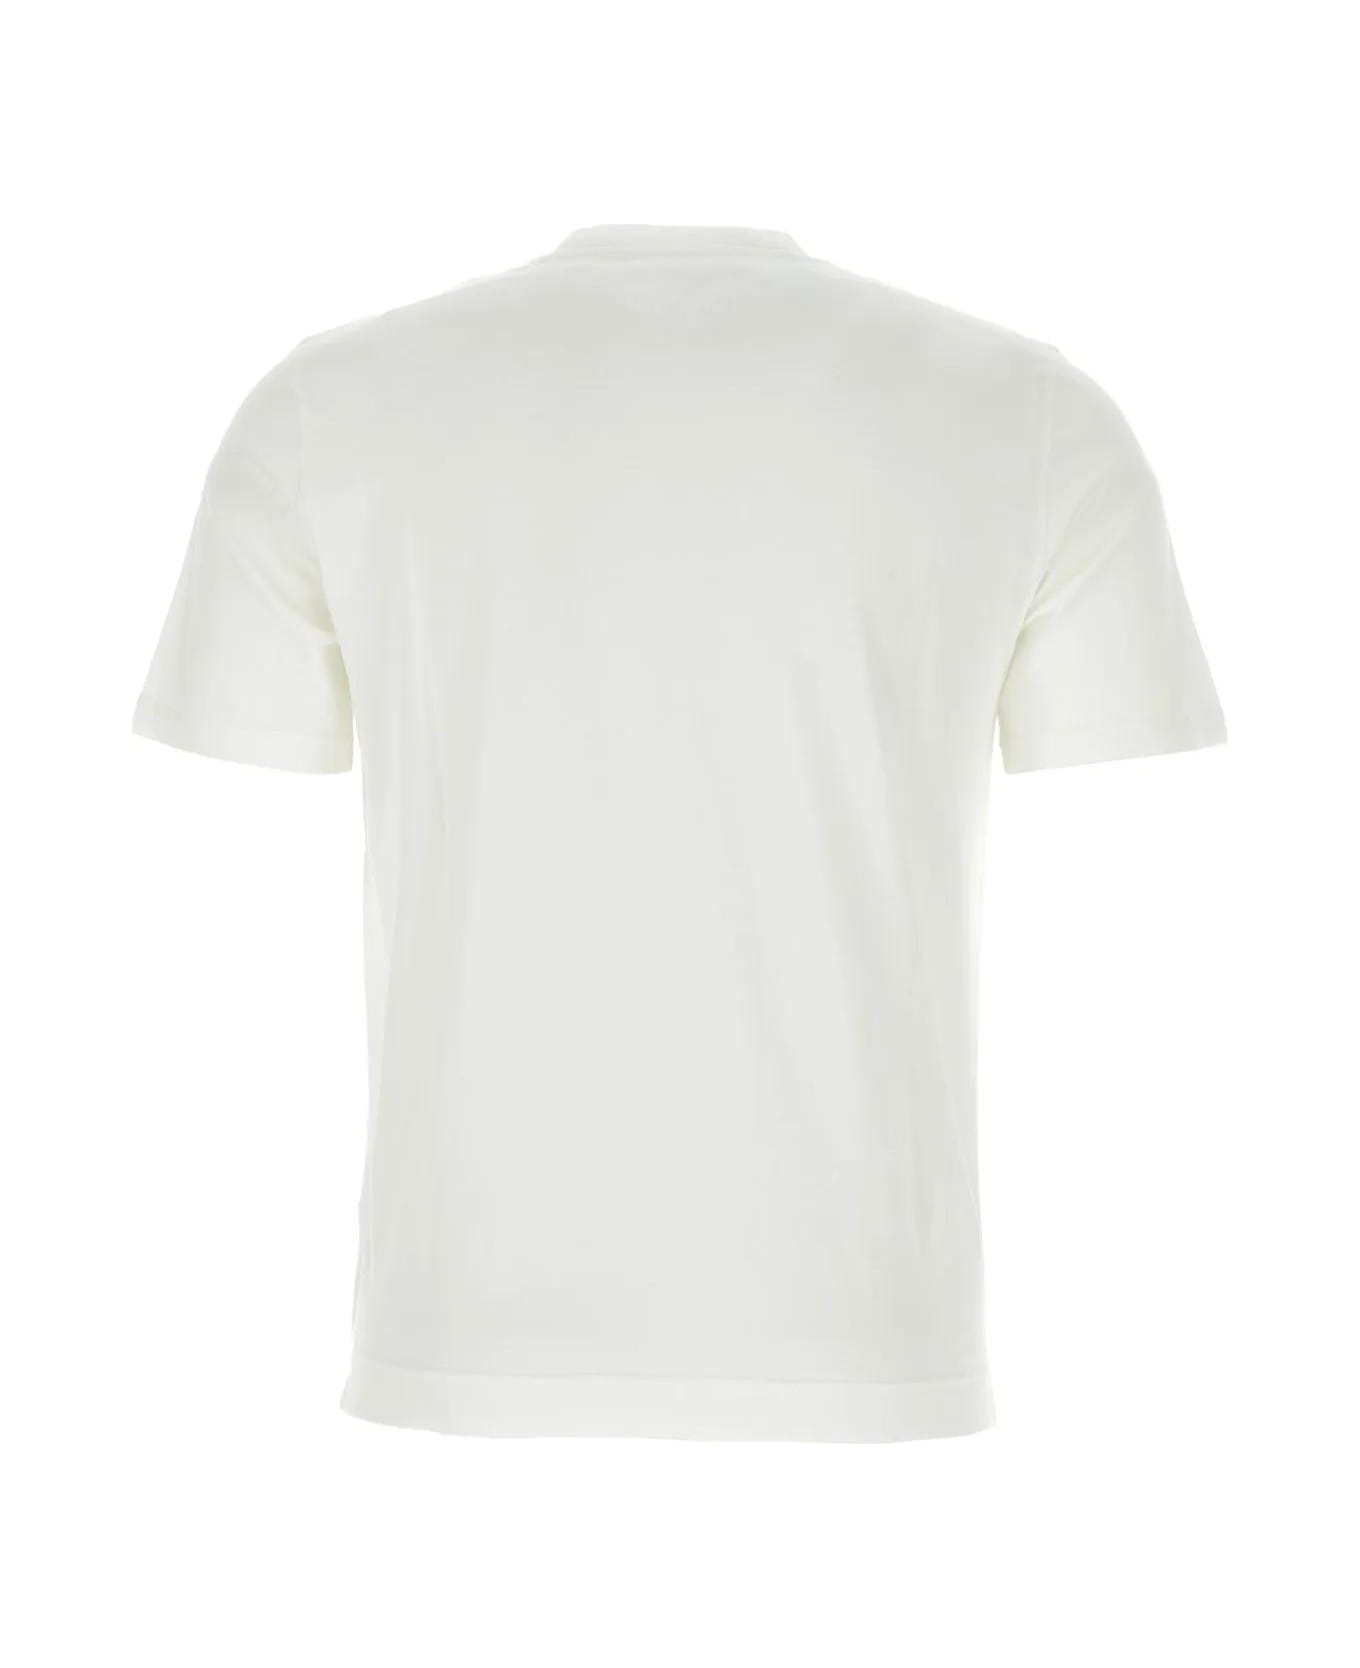 Fedeli White Cotton T-shirt - WHITE